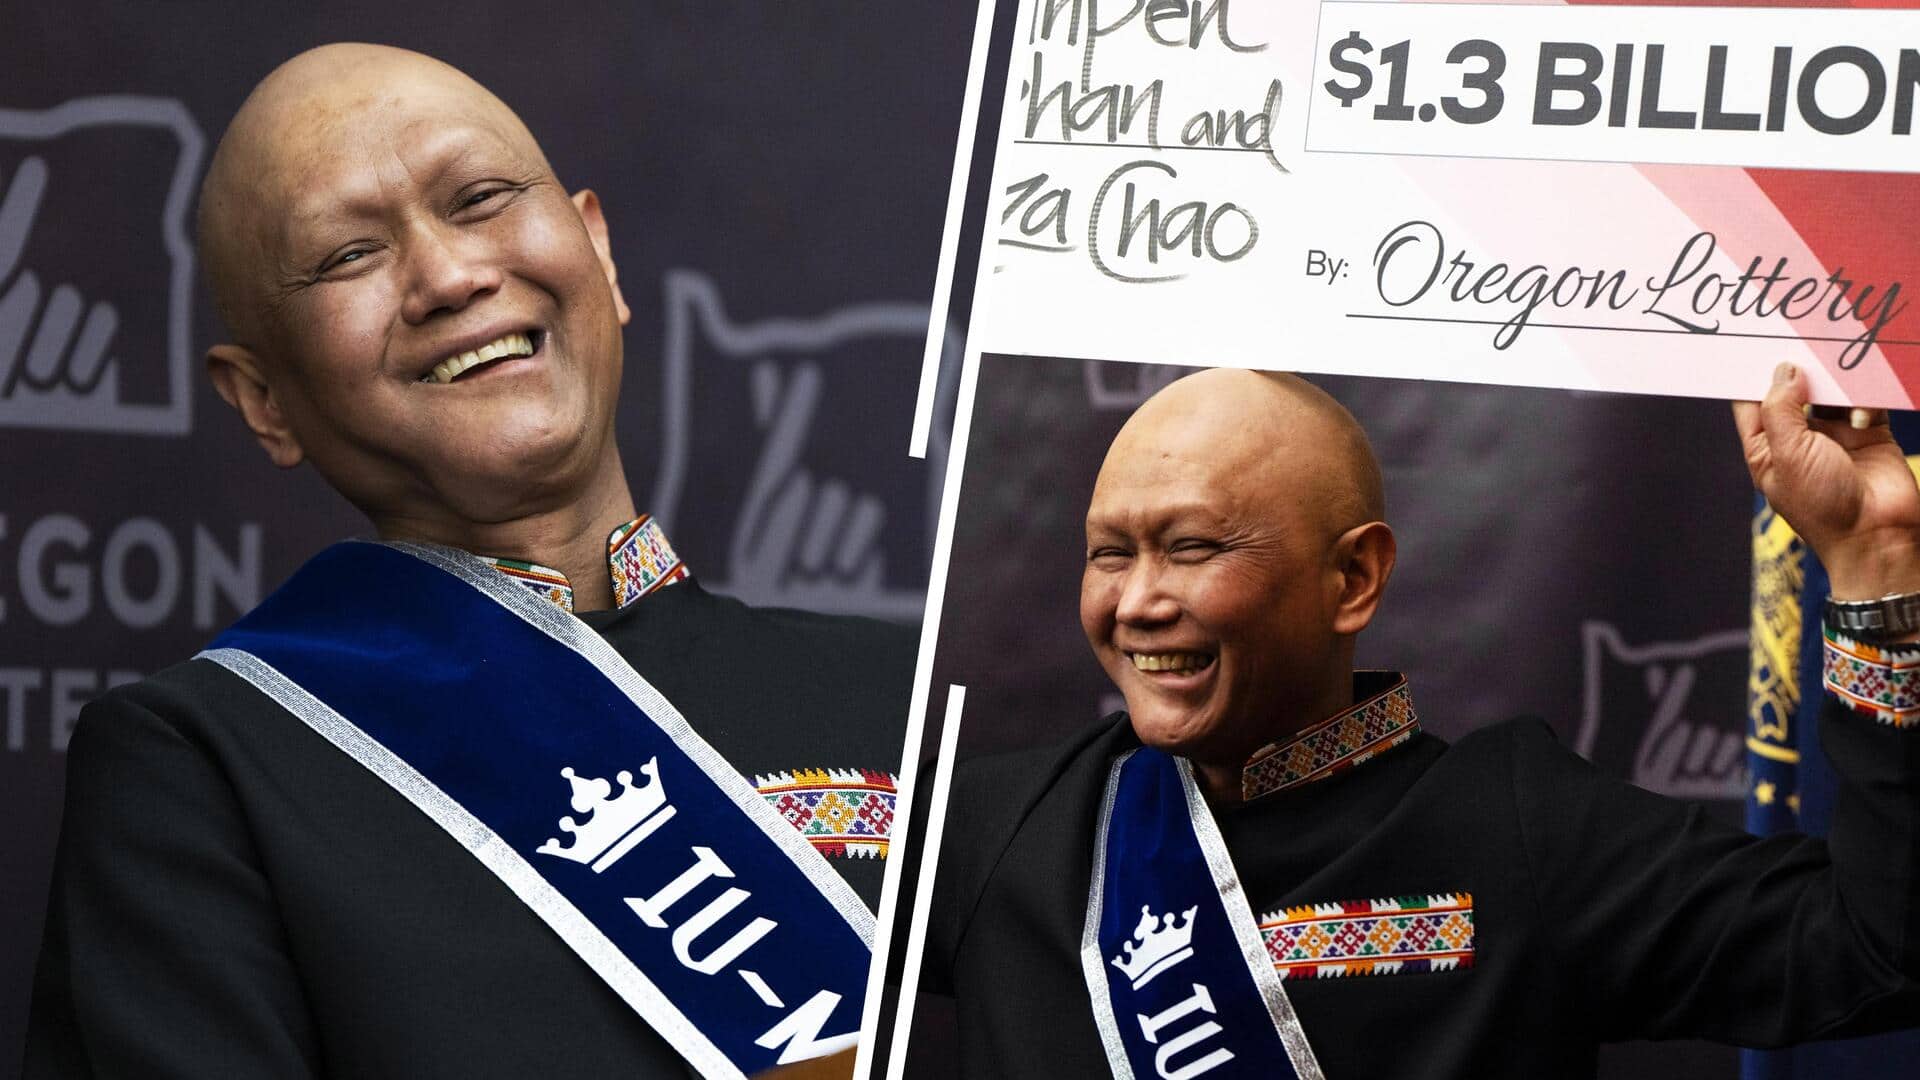 लाओस के अप्रवासी कैंसर रोगी ने पावरबॉल जैकपॉट में जीते 108 अरब रुपये 